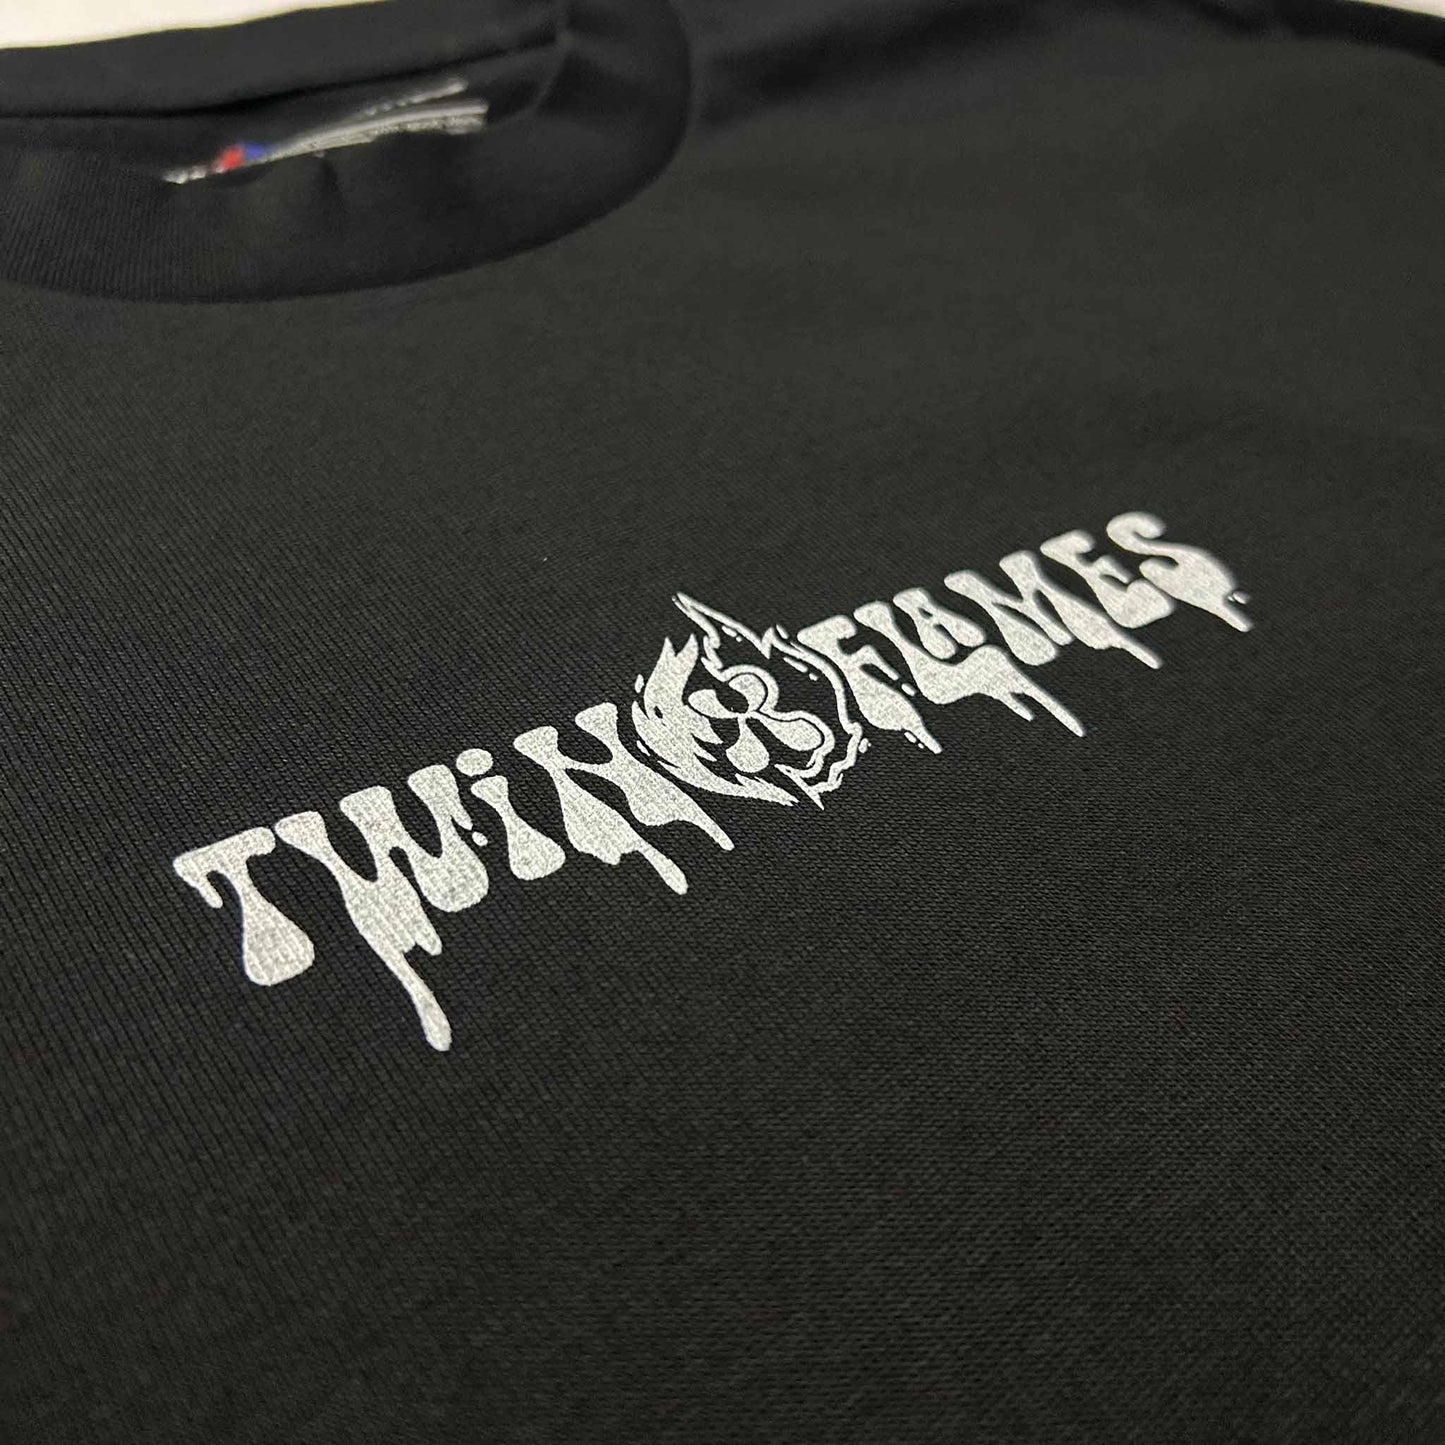 Twin x Flames "No Bad Trips" Oversized T-Shirt